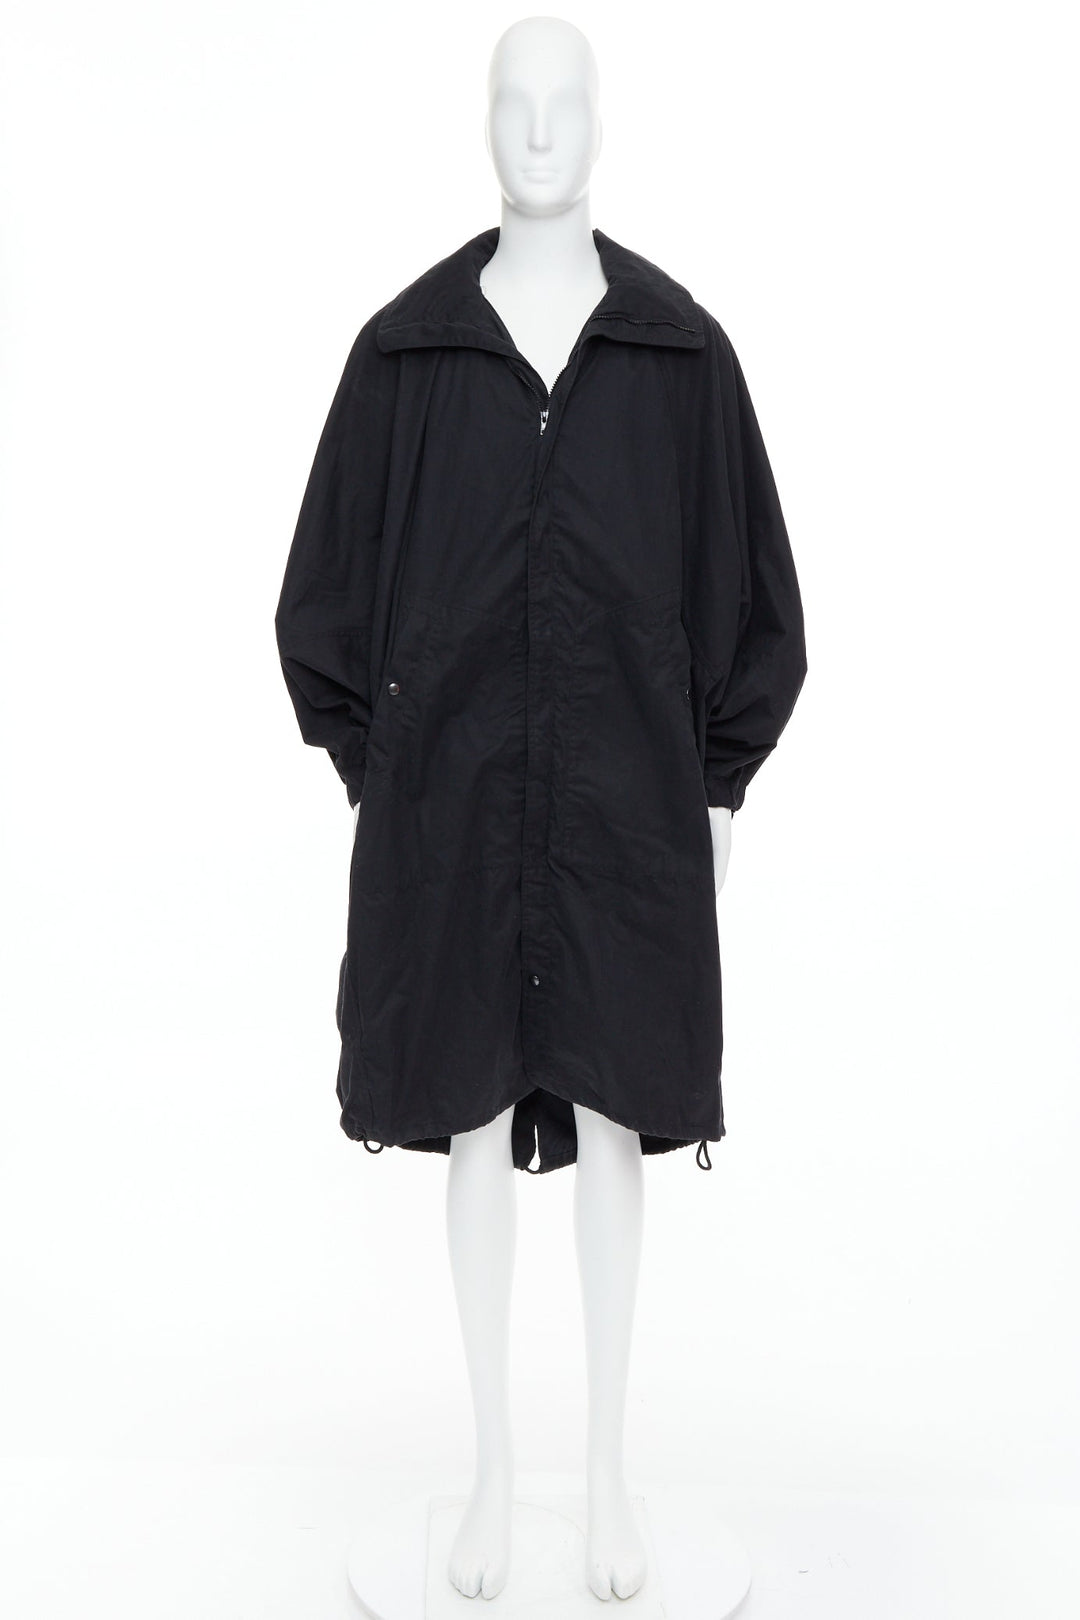 CHRISTOPHE LEMAIRE black cotton hooded cocoon anorak coat Sz 3 L